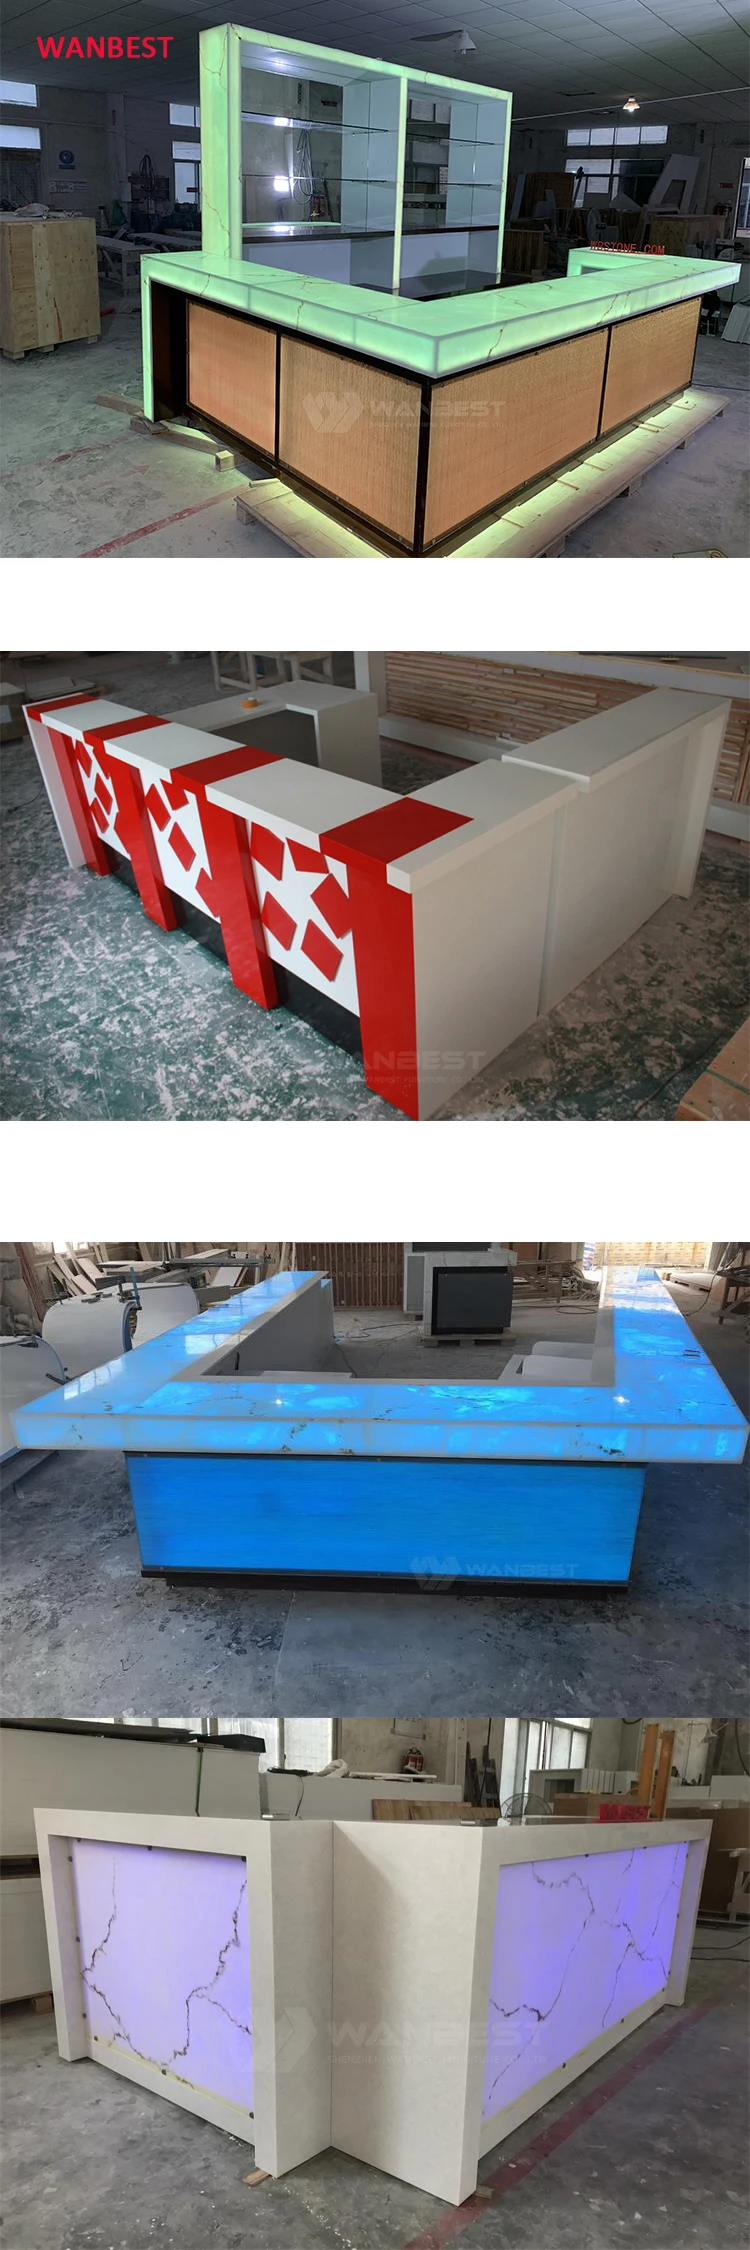 Desain Rumah Furniture Kulkas Meja Lipat Dan Kursi Bentuk Perahu